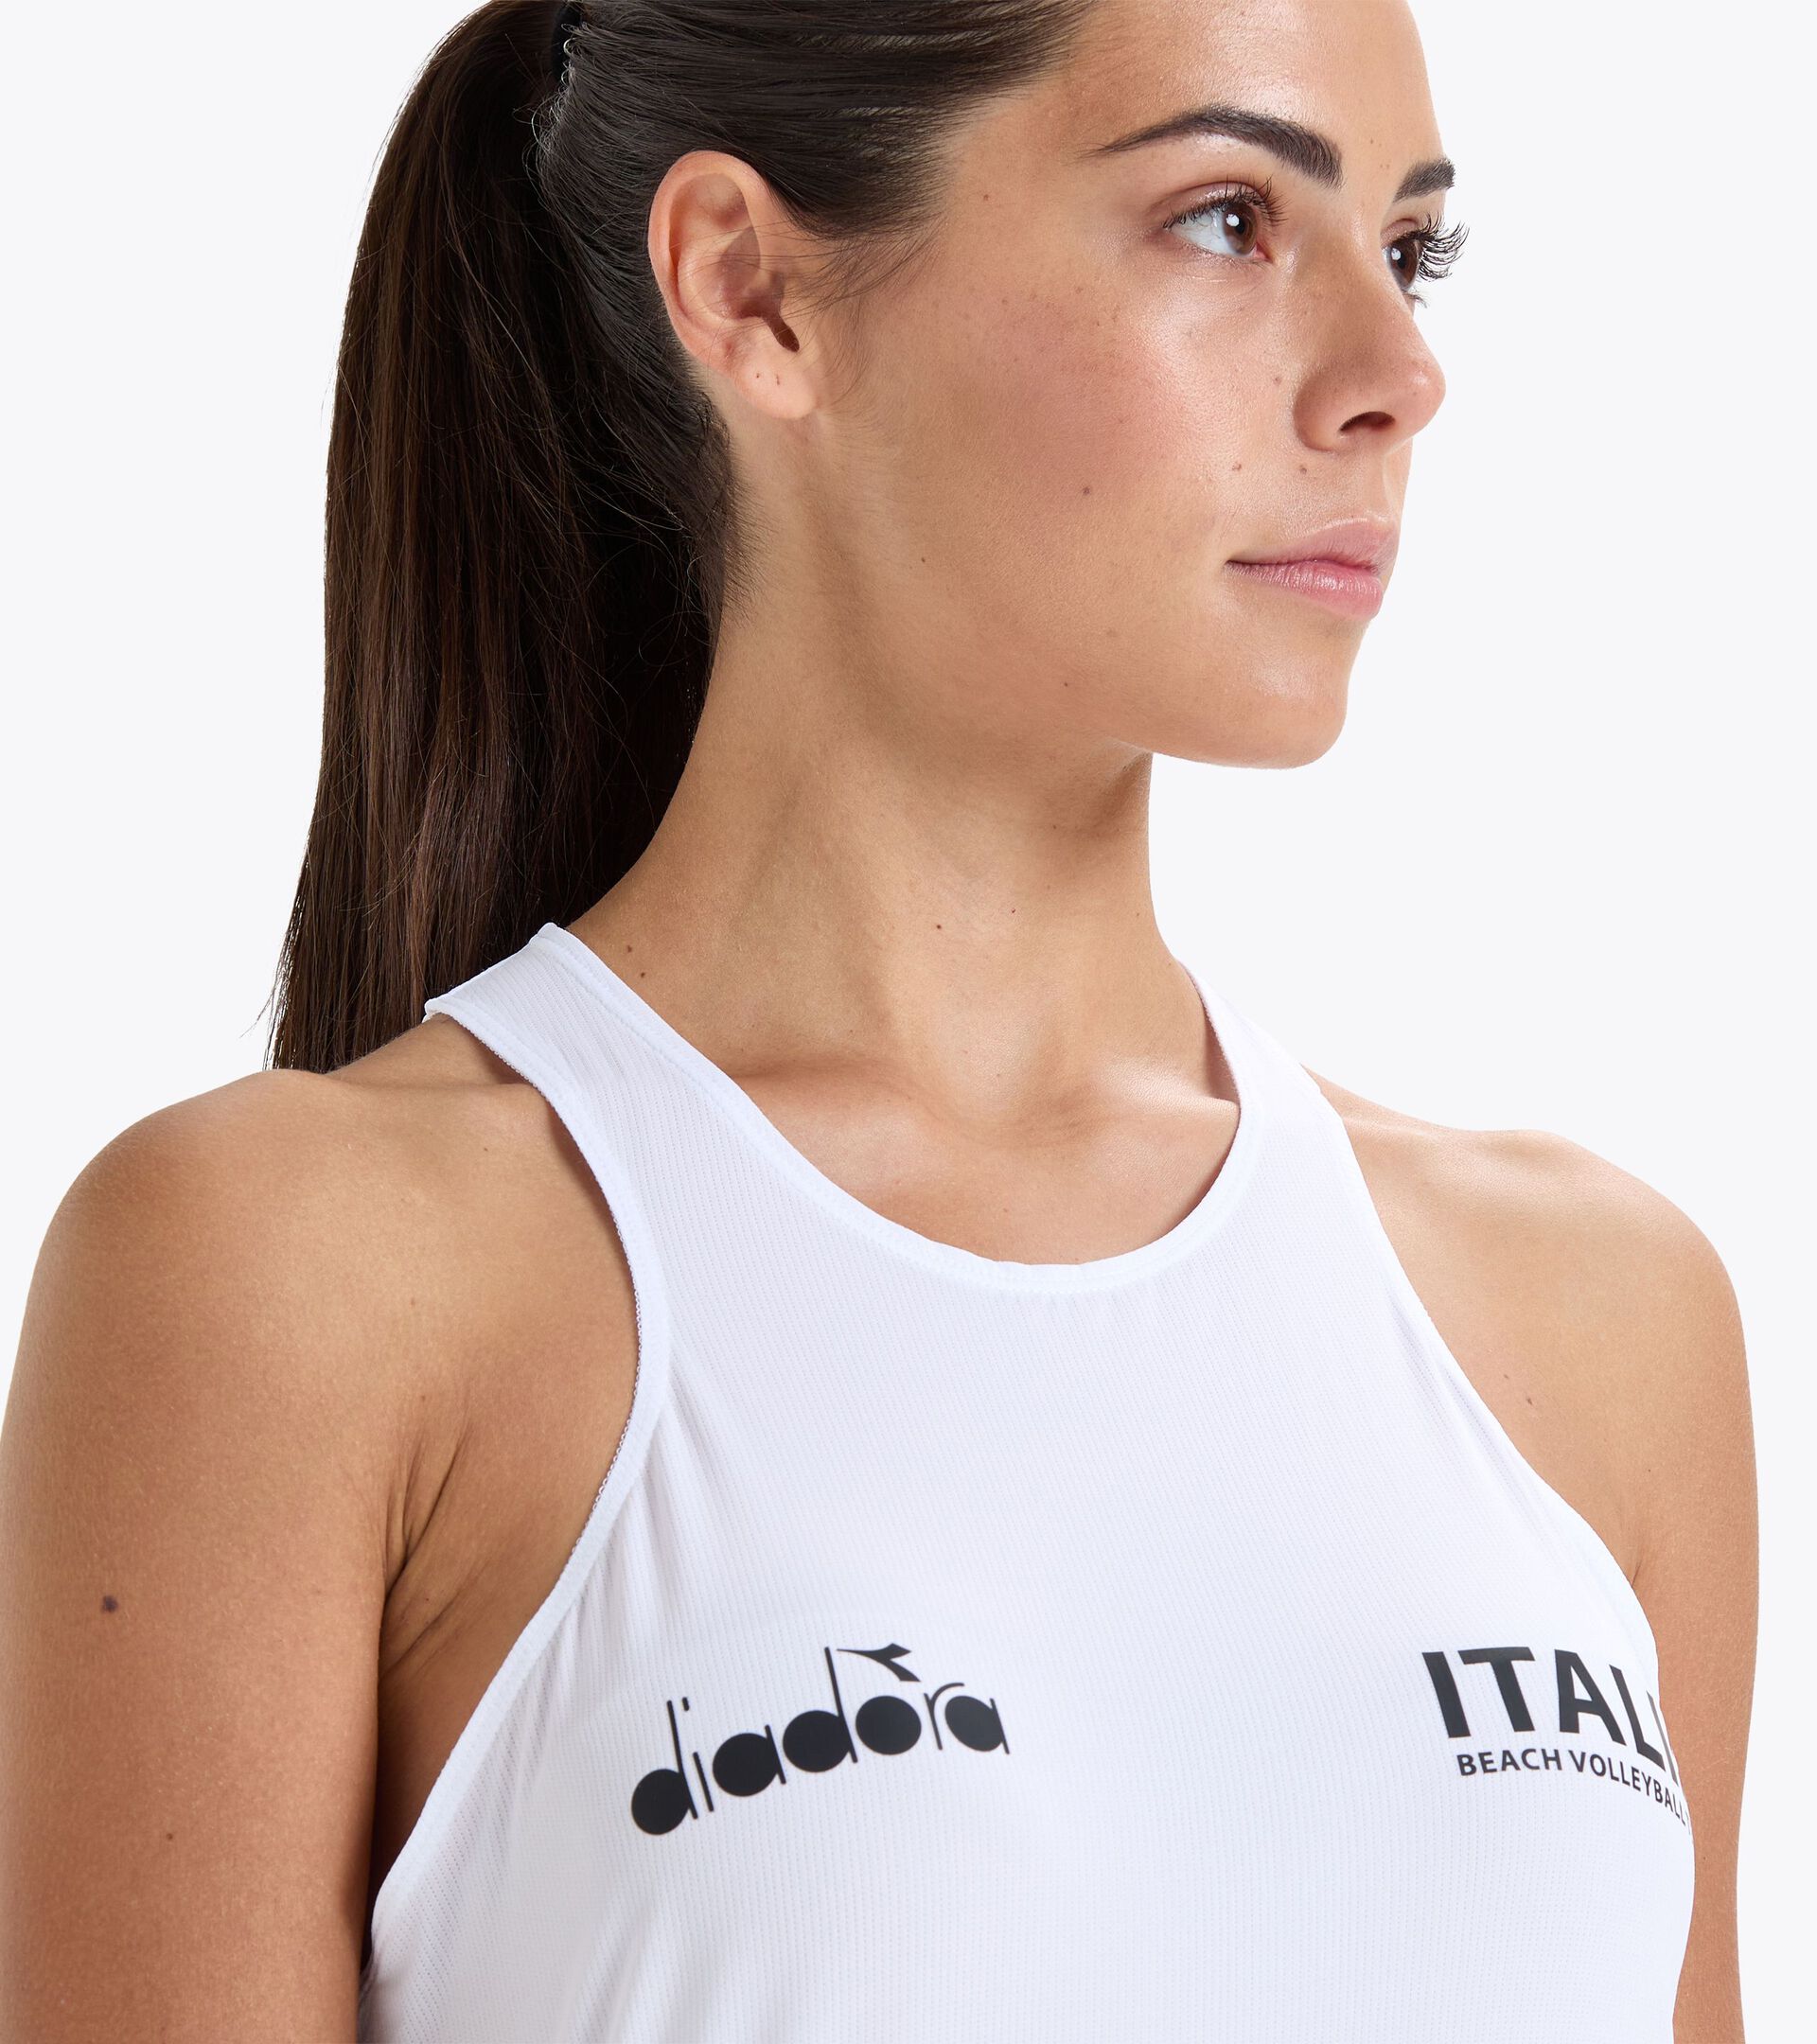 Tank top Women - Italy National Volleyball Team CANOTTA ALLENAMENTO DONNA BV23 ITALIA OPTICAL WHITE - Diadora